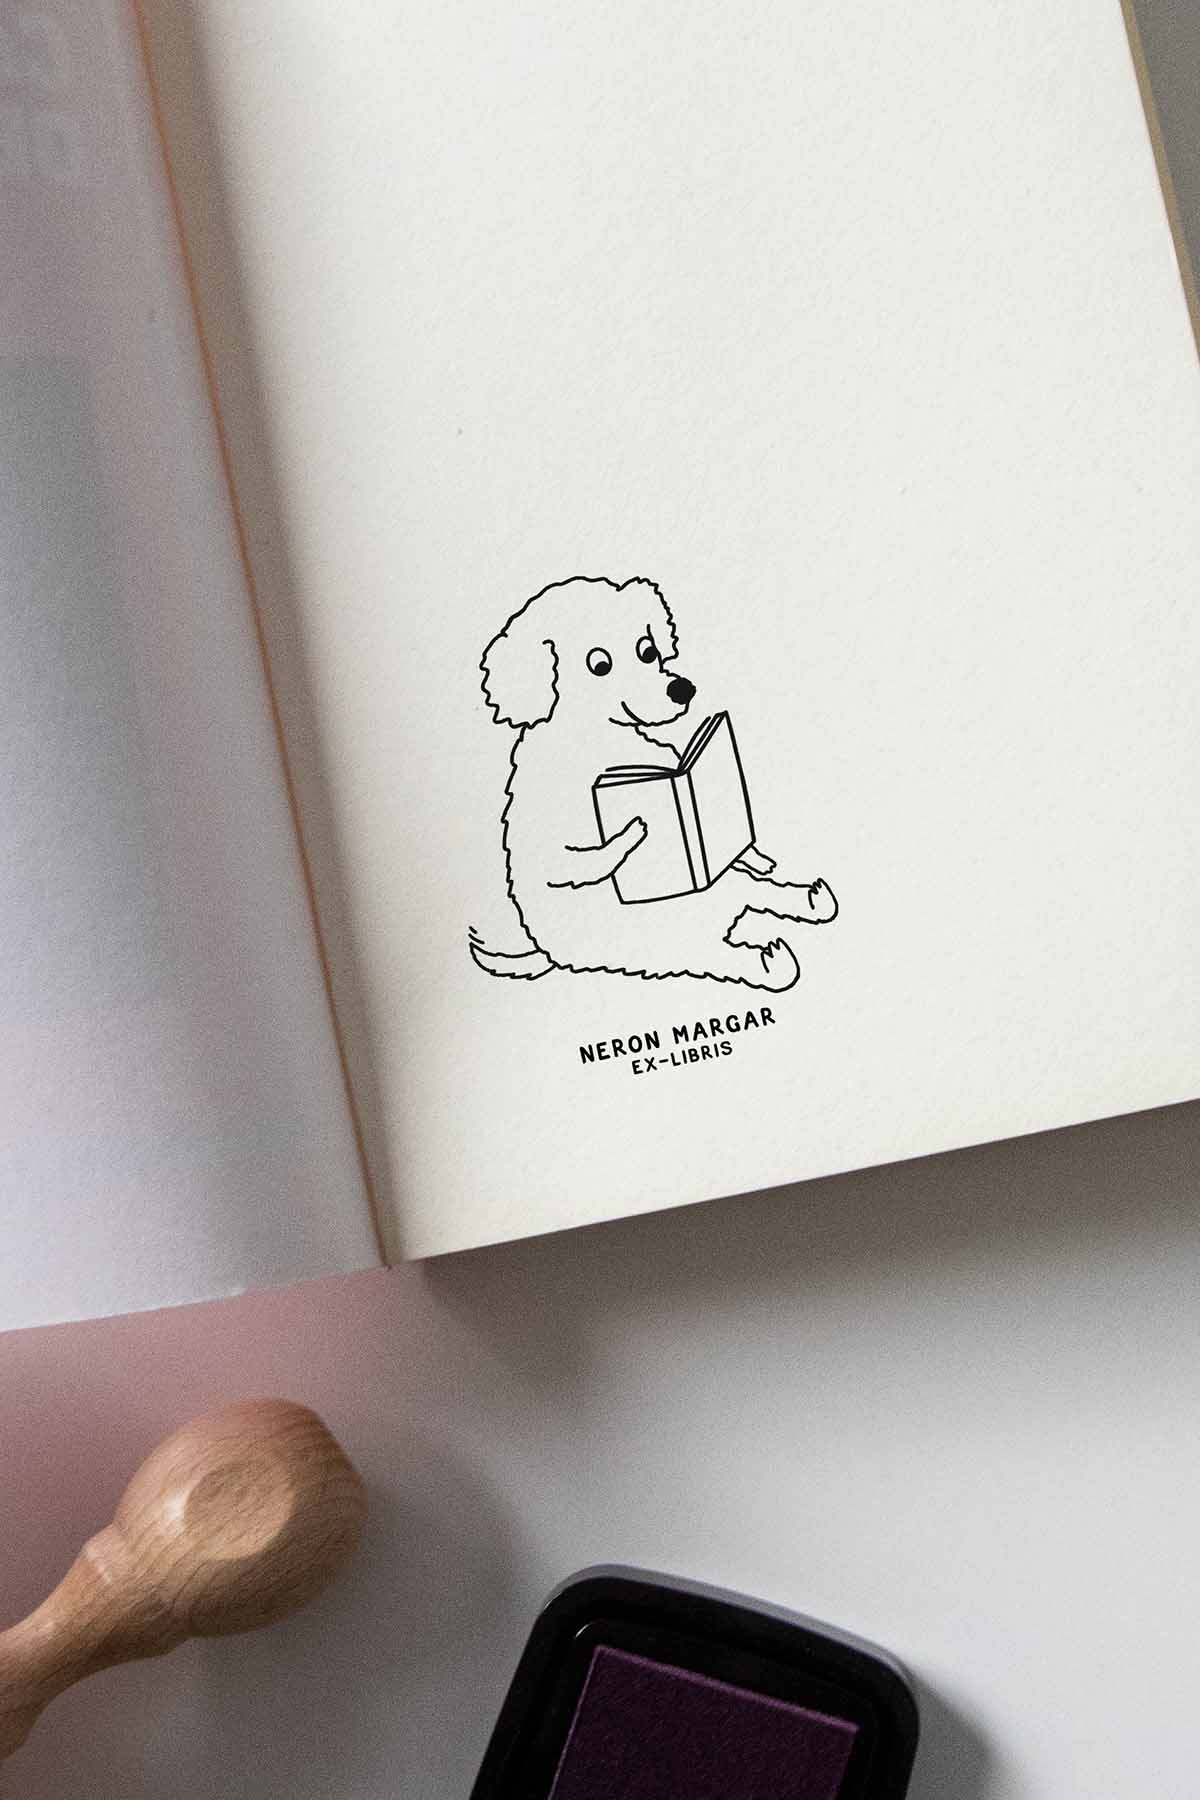 Portadilla de libro estampado con sello exlibris de un perro lector